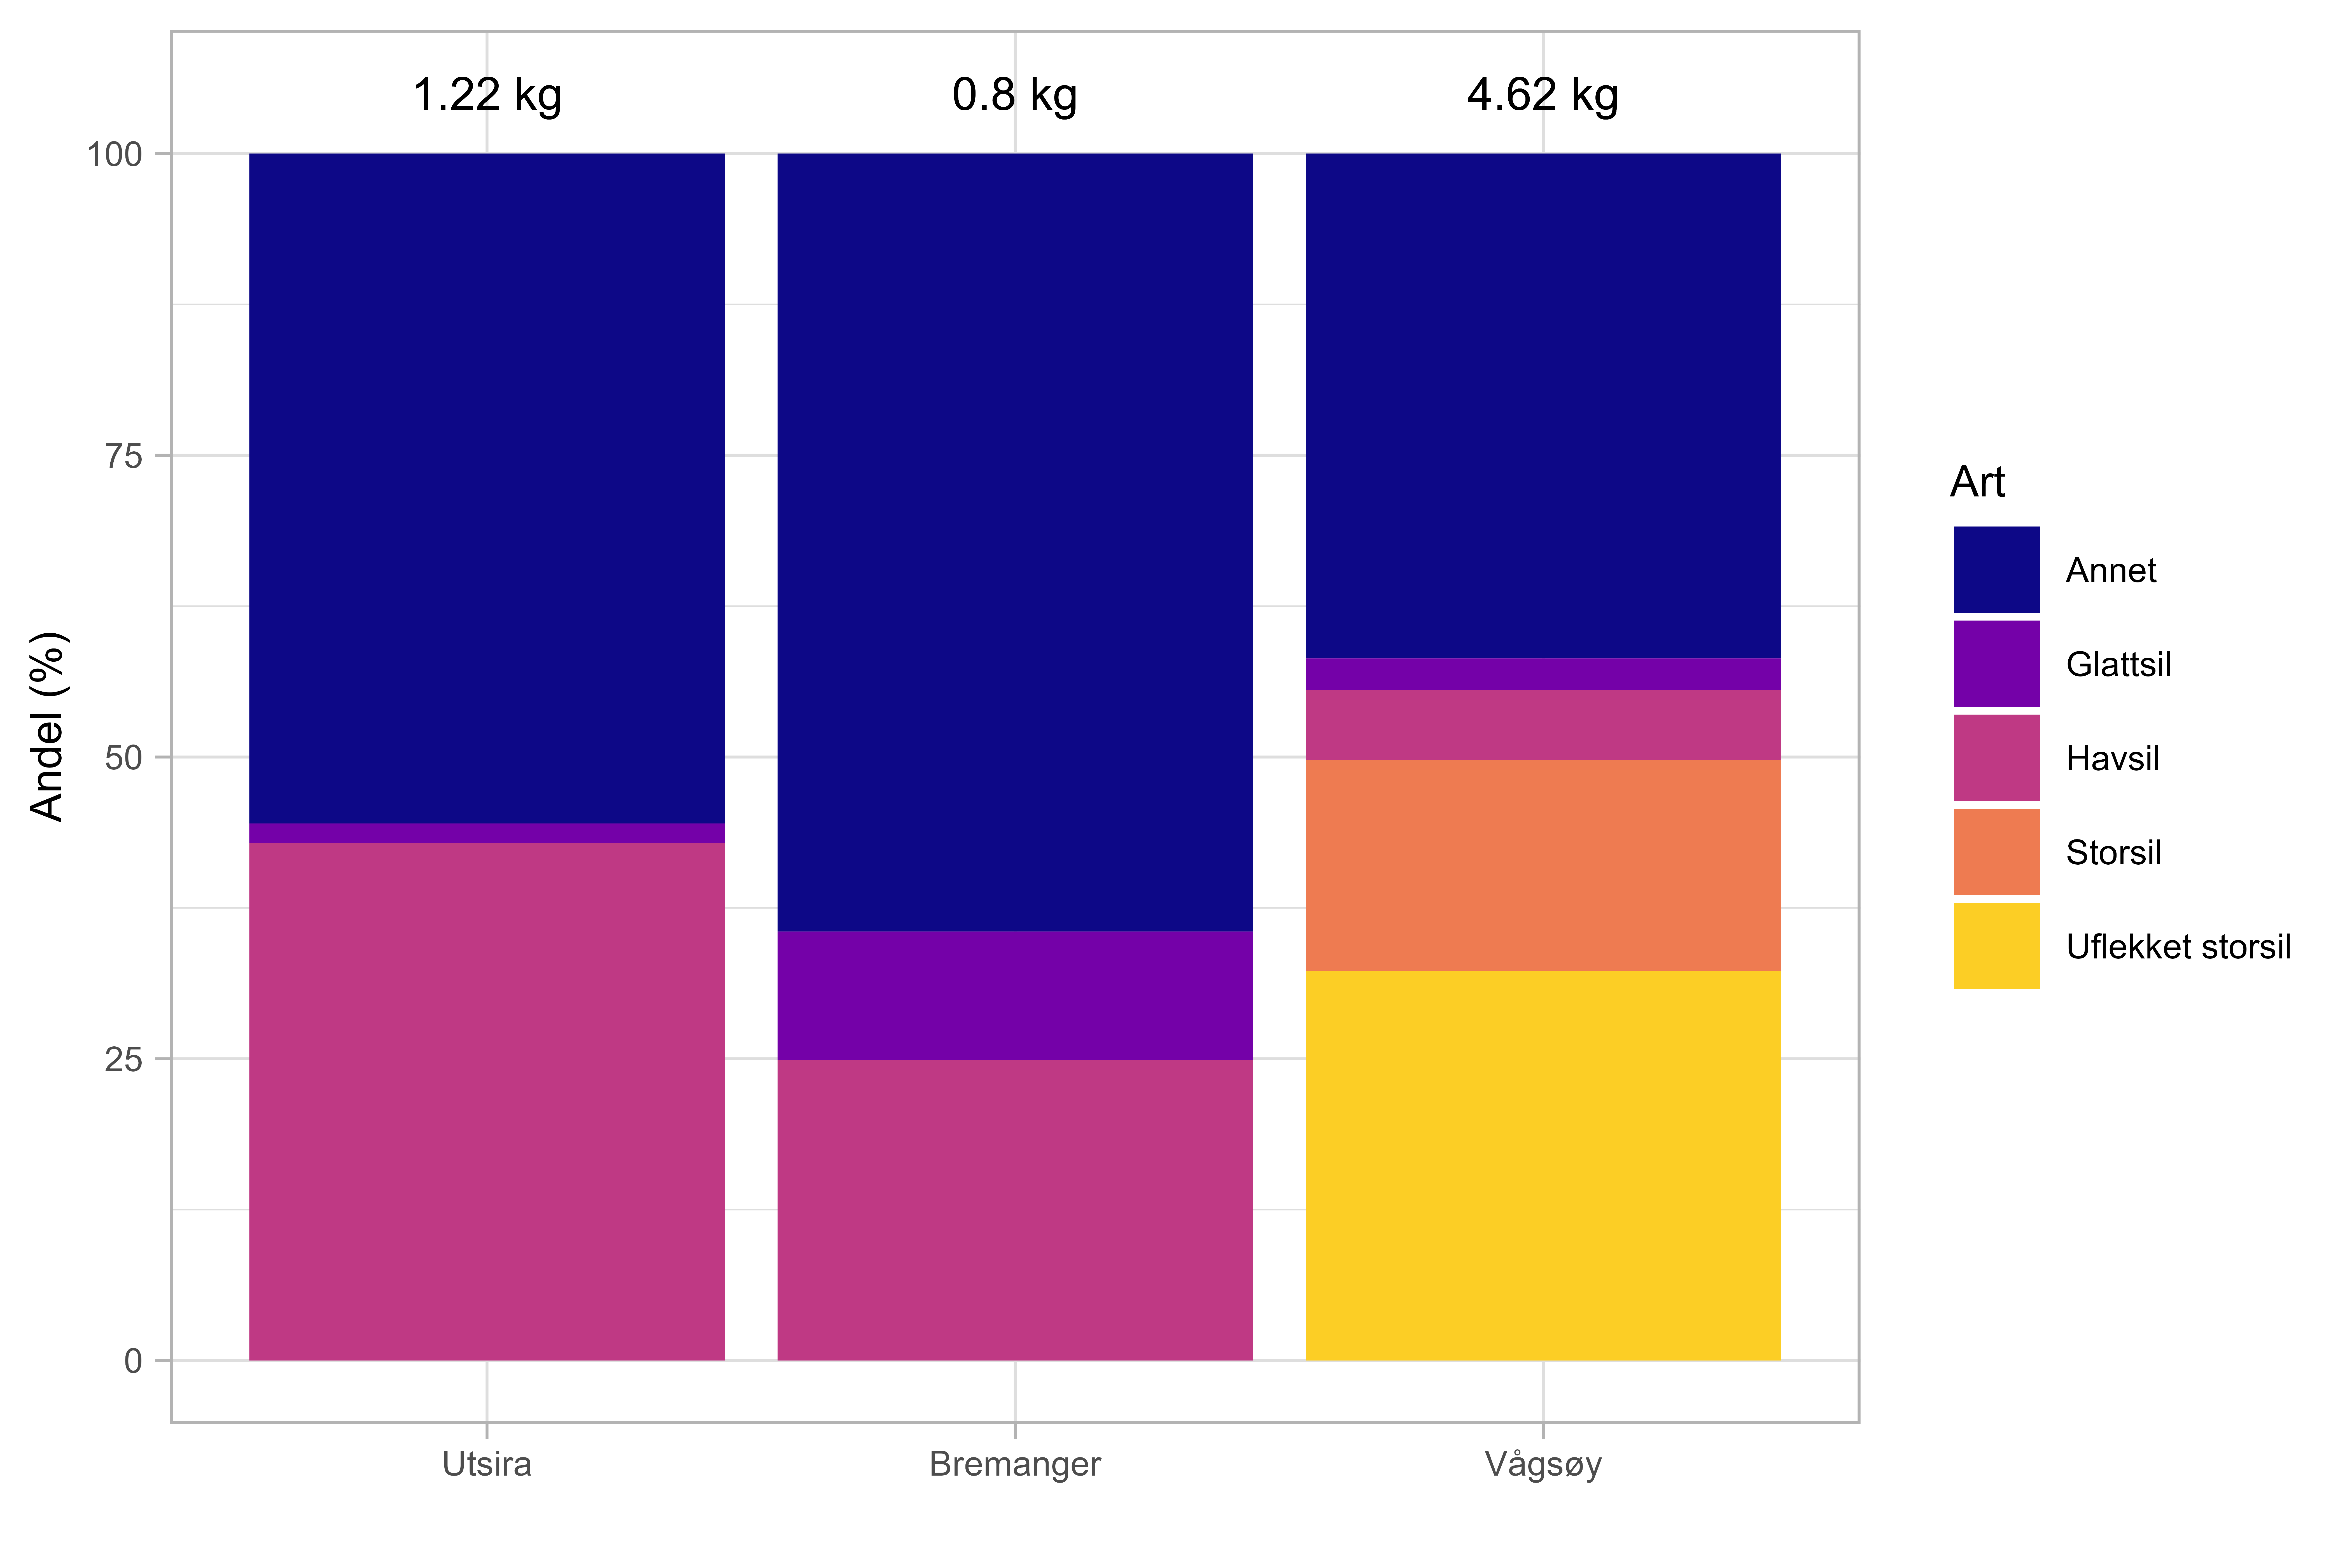 Figuren viser et diagram over andel sil-arter og annet i tobisskrapefangster i prosentandel av totalvekt per tobisfelt. Diagrammet har en søyle for hver av de tre tobis-feltene Utsira, Bremanger og Vågsøy og y-aksen viser andel (0-100 %). Fargene viser annet (mørk blå), glattsil (lilla), havsil (rosa), storsil (oransje) og uflekket storsil (gul).